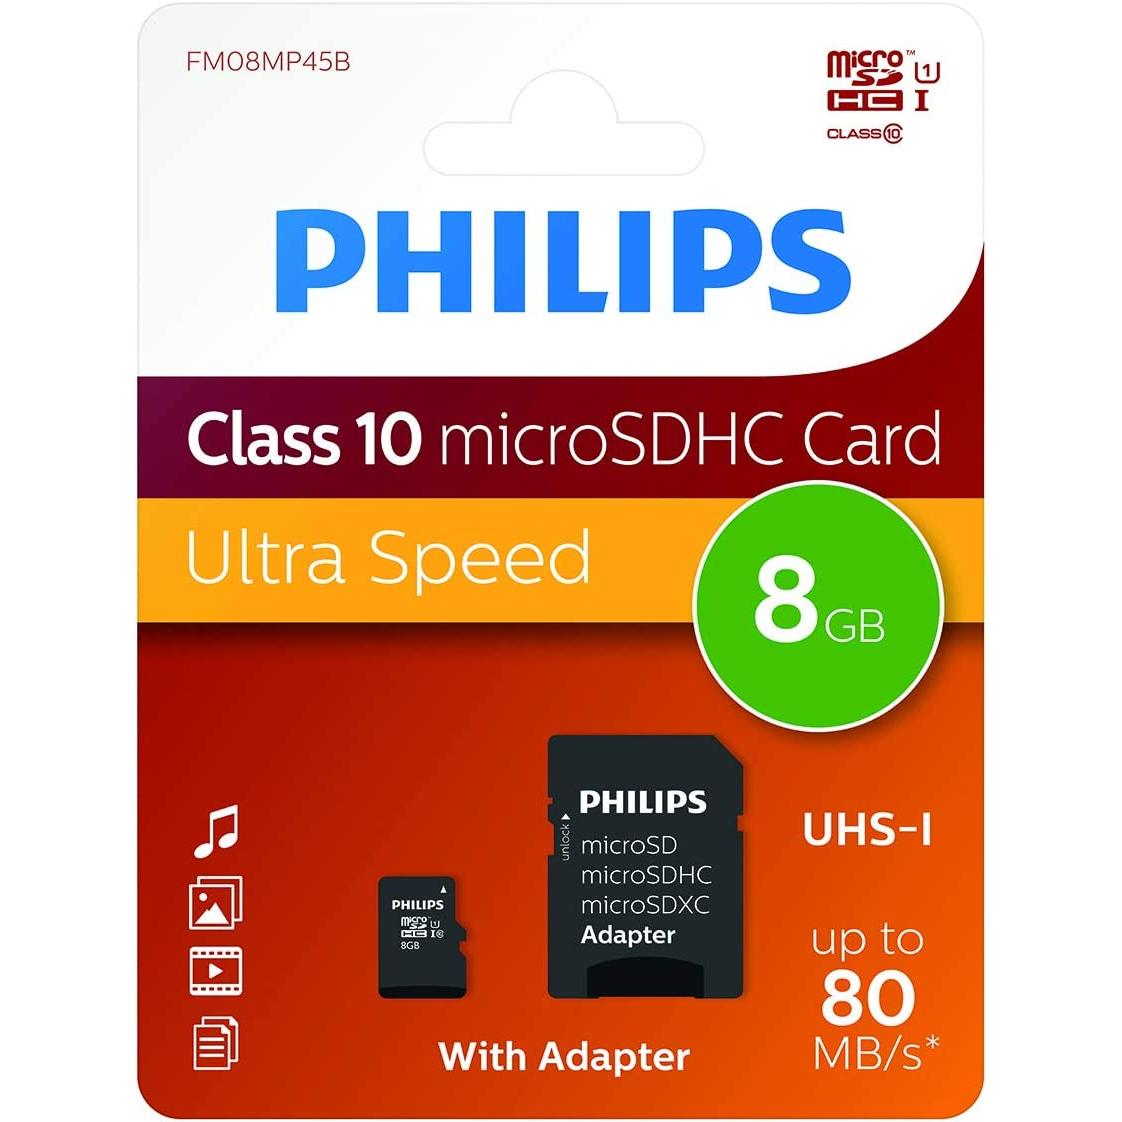 Movitel - Philips Micro SD Card Class 10 | Capacidades Disponibles: 8GB, 16GB, 32GB, 64GB y 128GB Incluye Adaptador - Amplía la capacidad de almacenamiento de tus dispositivos con confianza. MicroSDHC o MicroSDXC Hasta 80MB/s